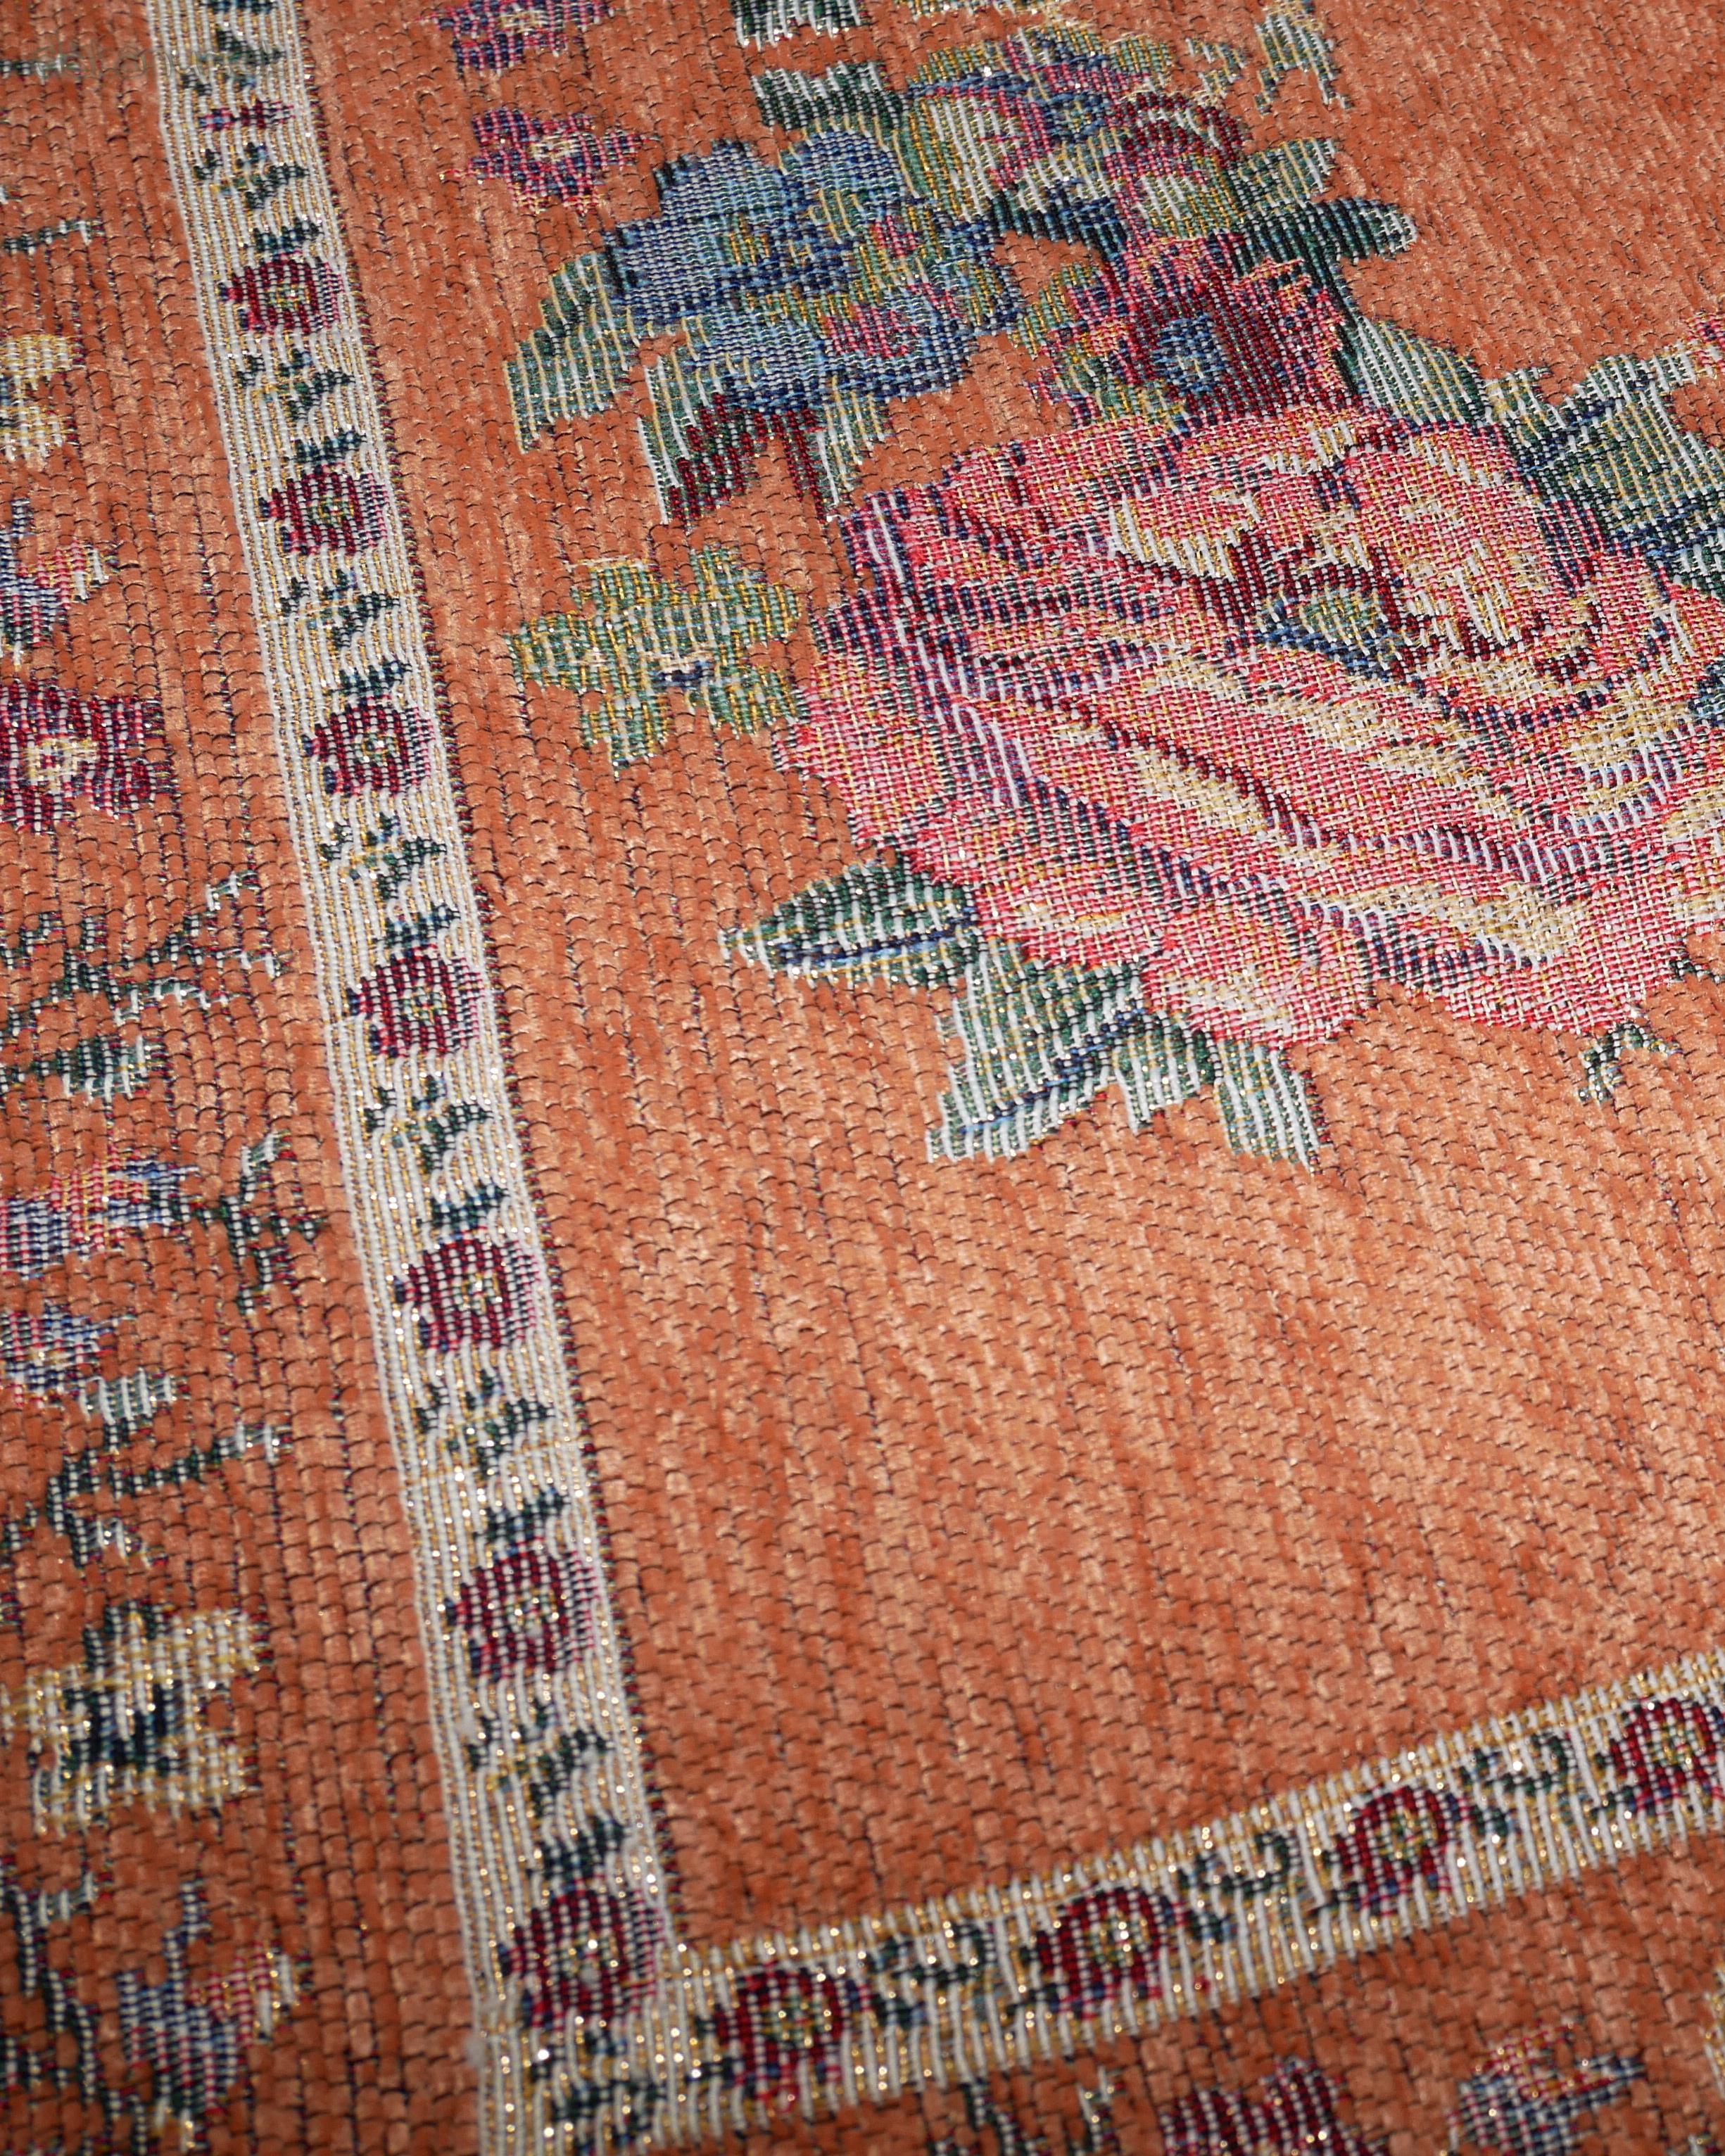 Tenší cestovateľský modlitebný koberec - marhuľový